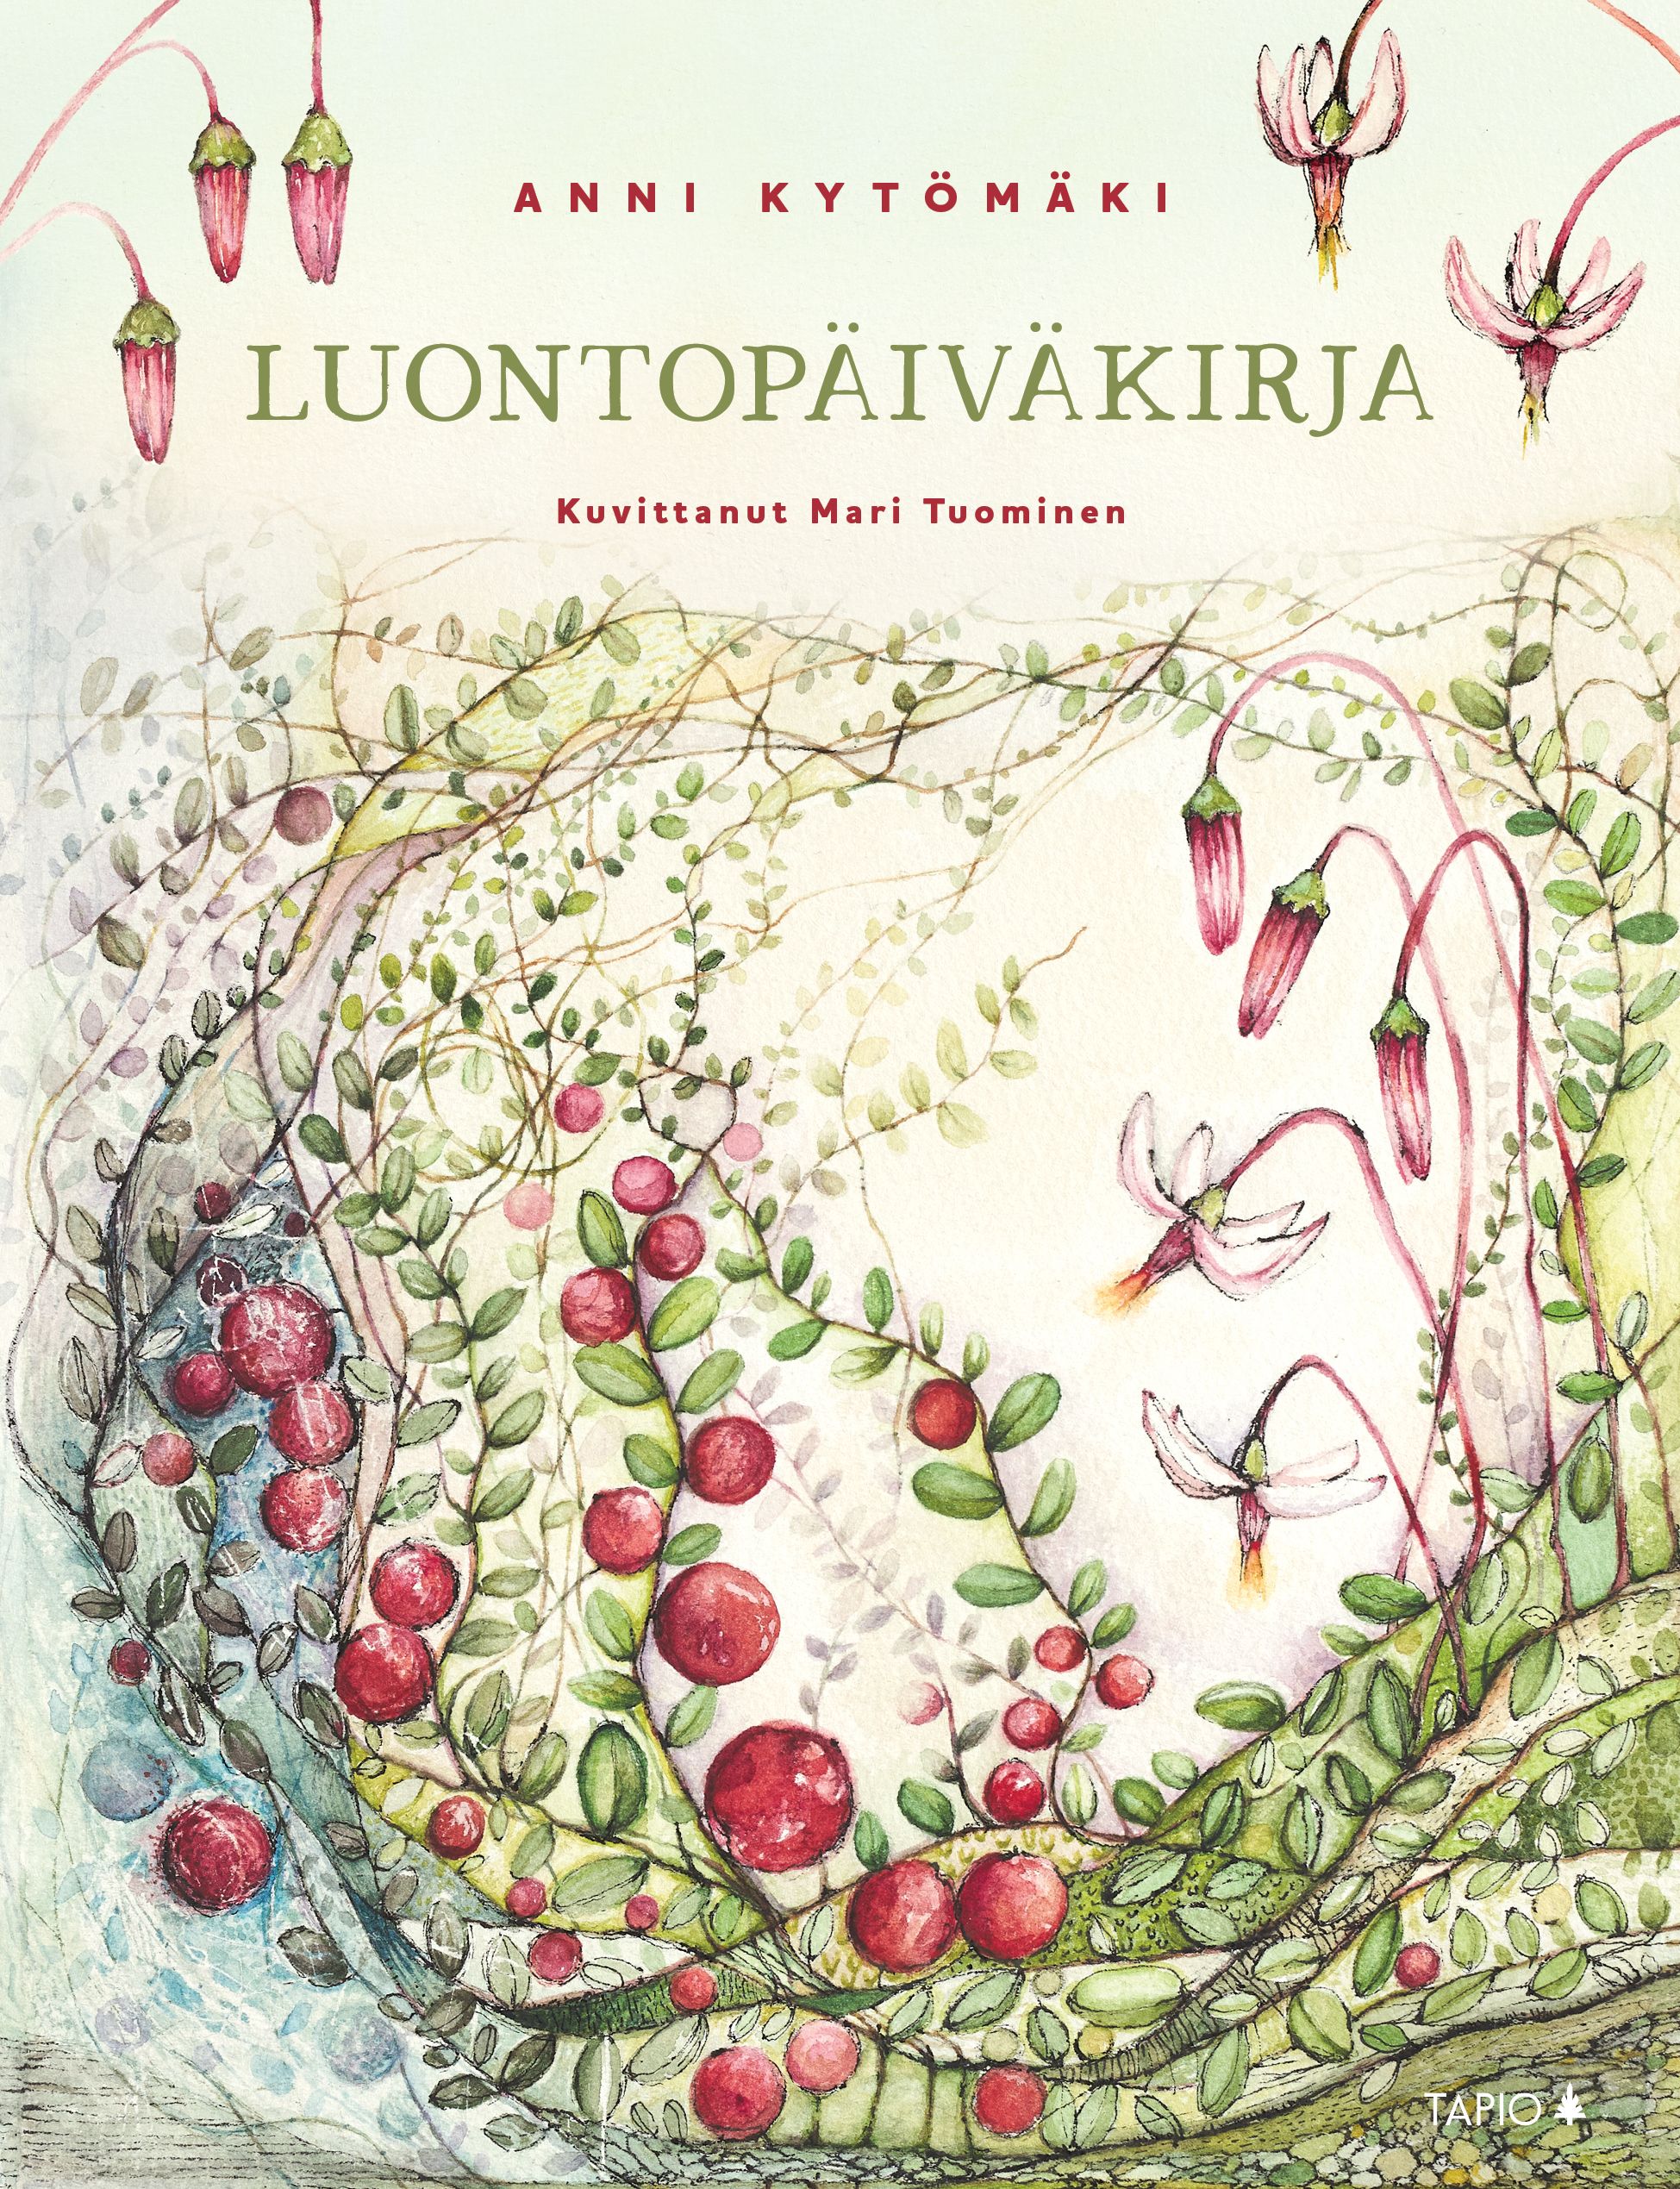 Anni Kytömäki : Luontopäiväkirja